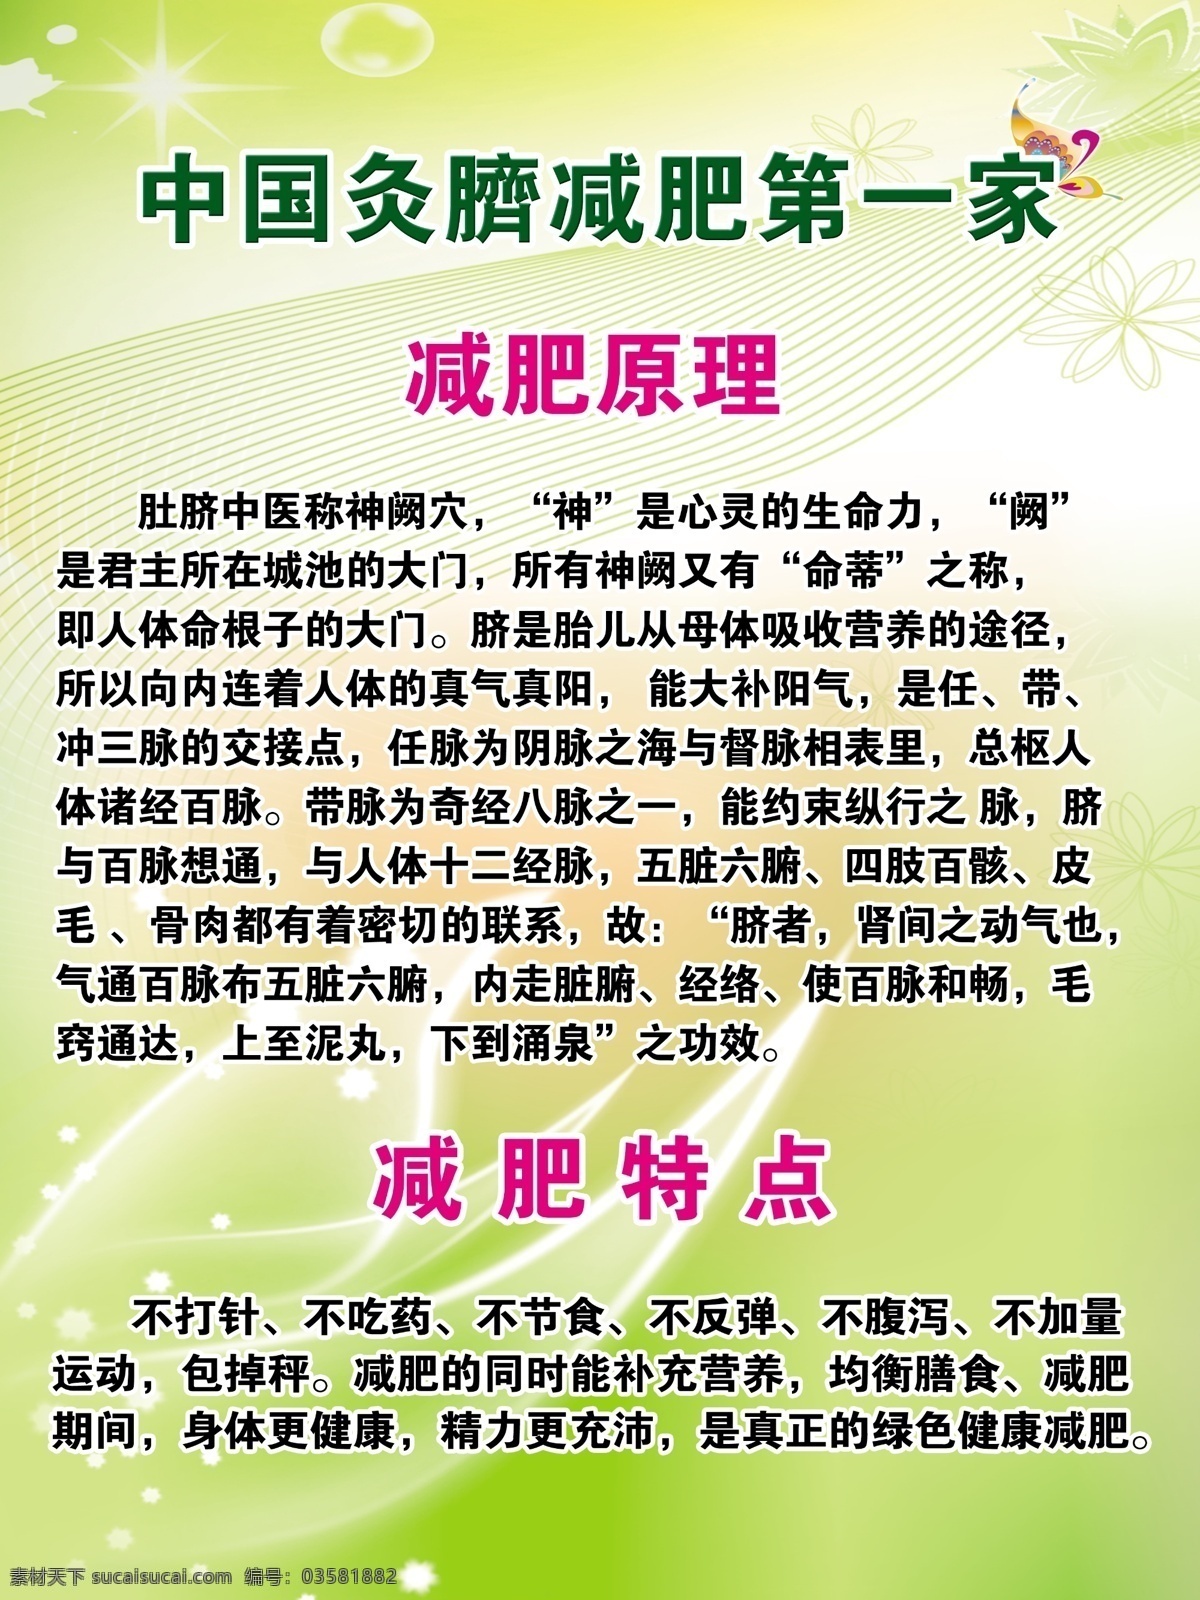 灸 脐 减肥 宣传单 灸脐减肥 中国灸脐减肥 减肥原理 减肥特点 绿色背景 春天 dm宣传单